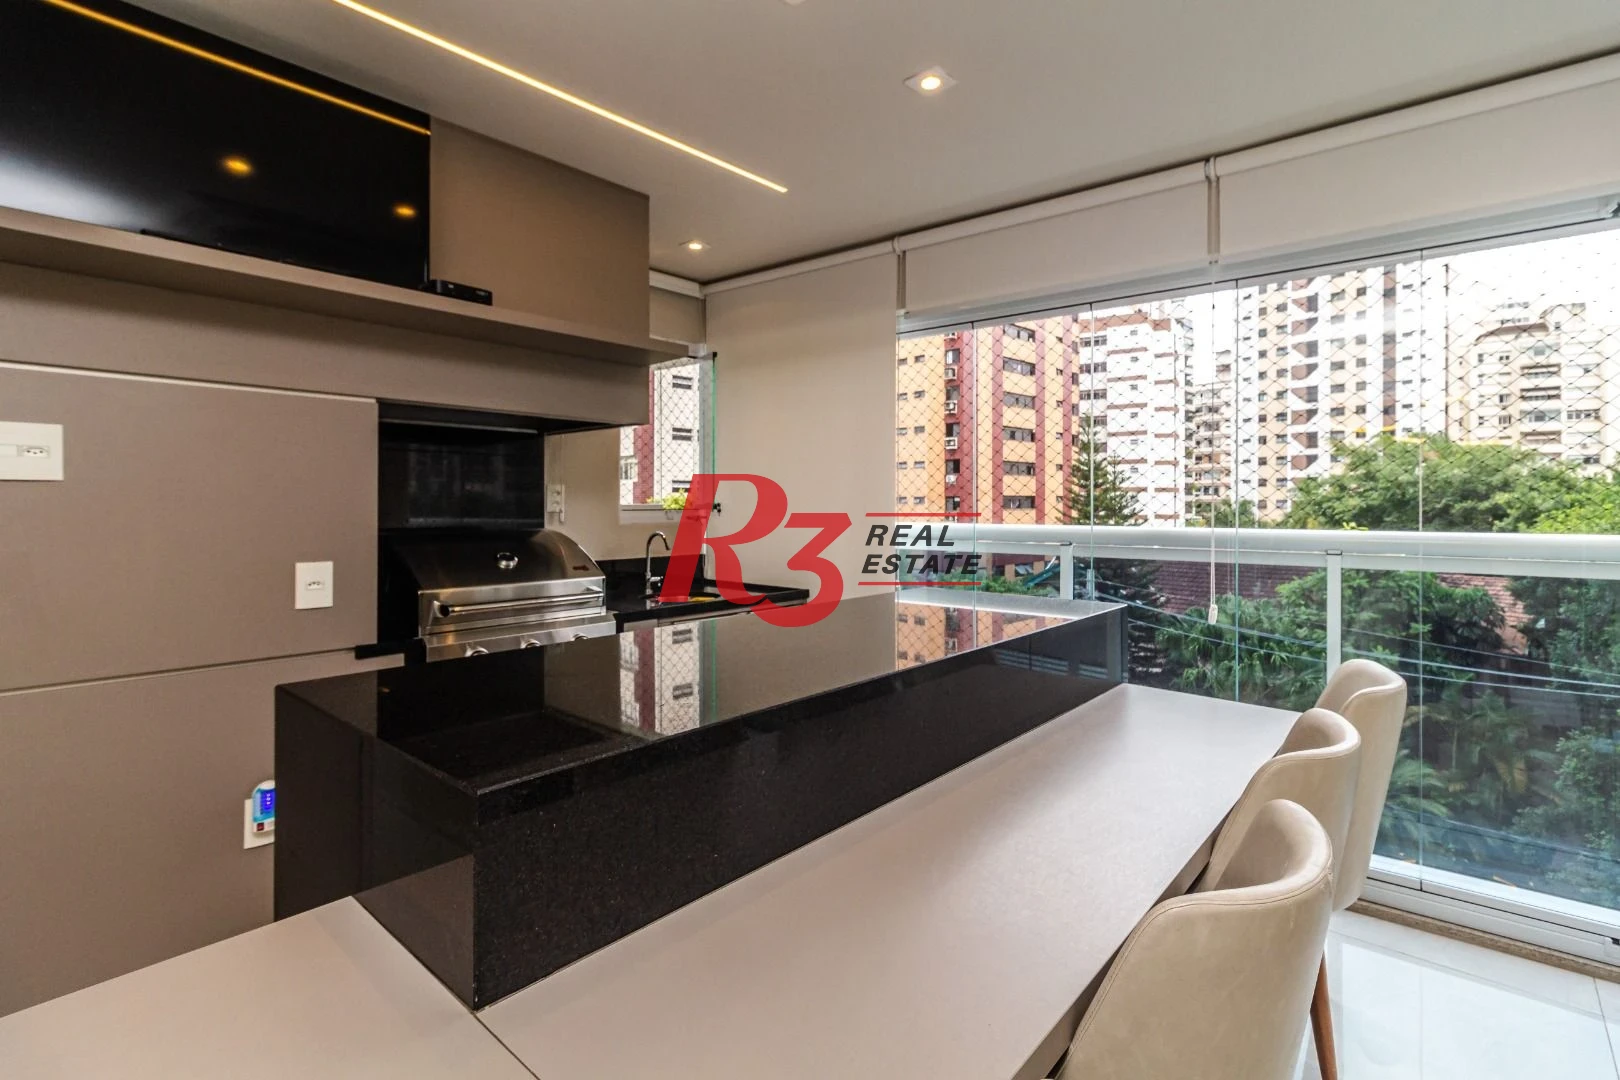 Apartamento Garden com 4 dormitórios à venda, 300 m² por R$ 4.300.000,00 - Vila Rica - Santos/SP